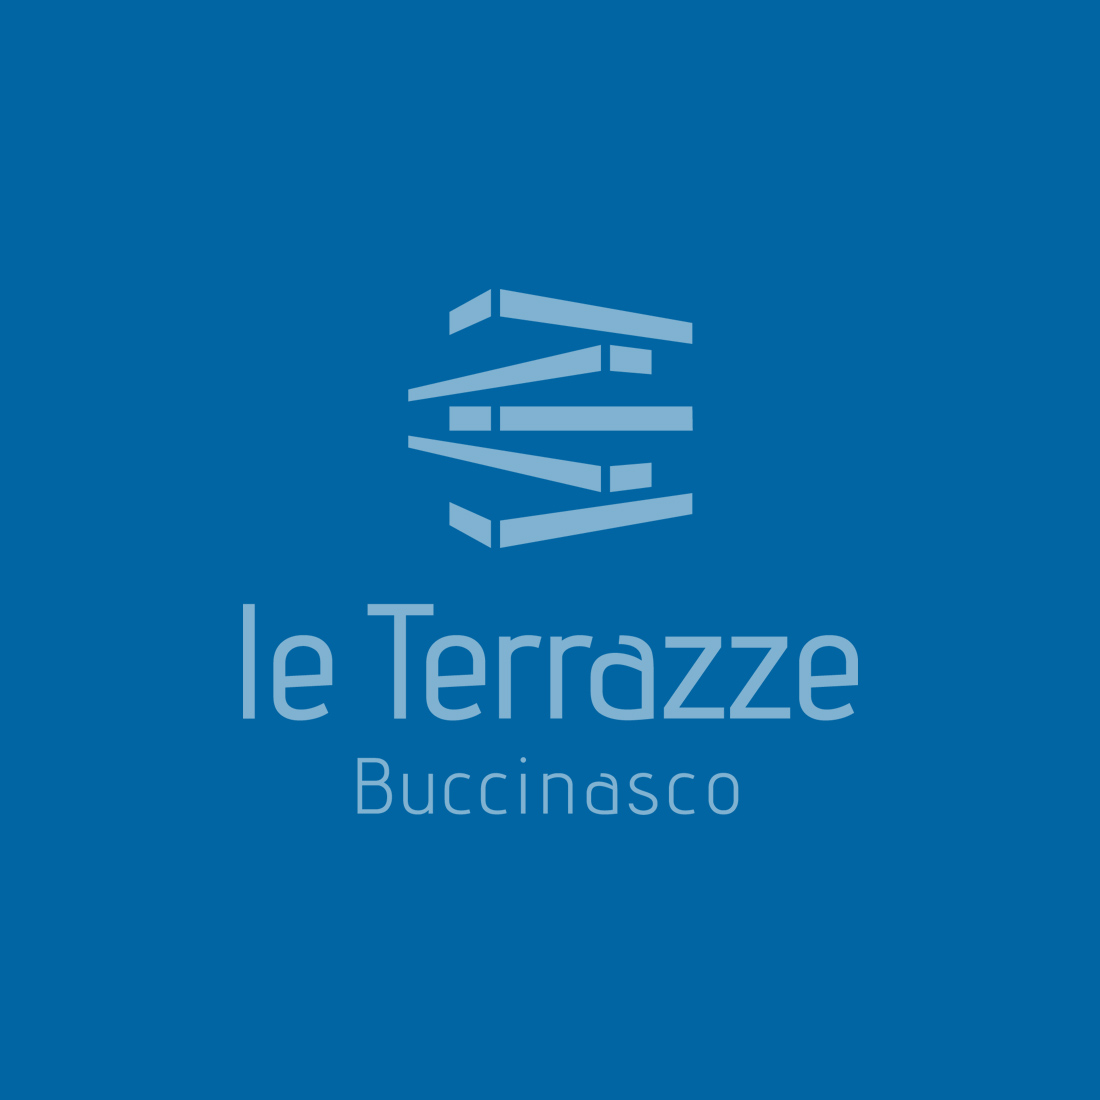 Le Terrazze corporate identity